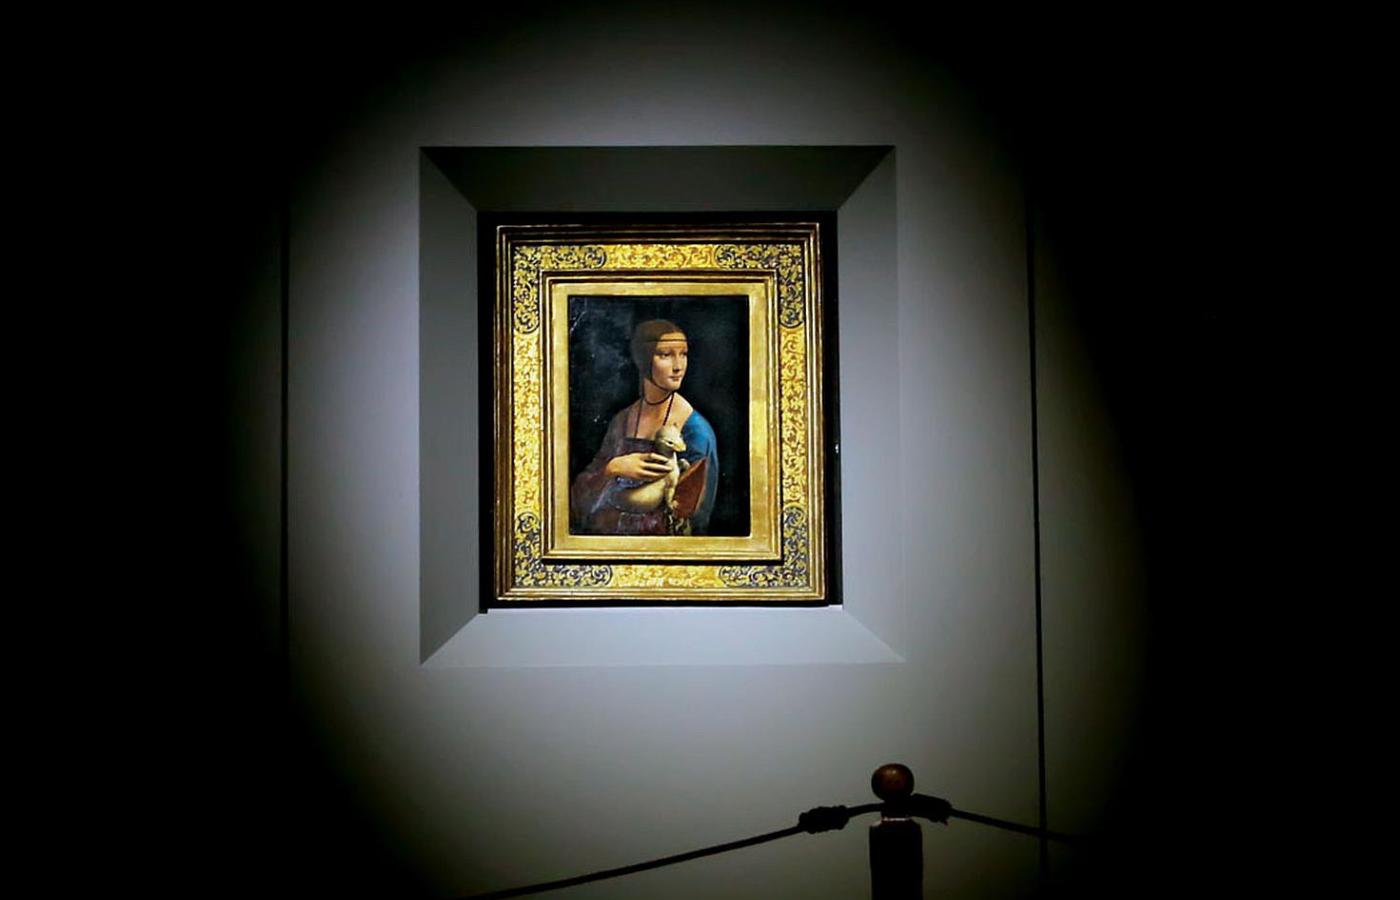 Obraz Leonarda da Vinci „Dama z gronostajem”, przez wielu uważany za wspanialszy od słynnej „Giocondy”